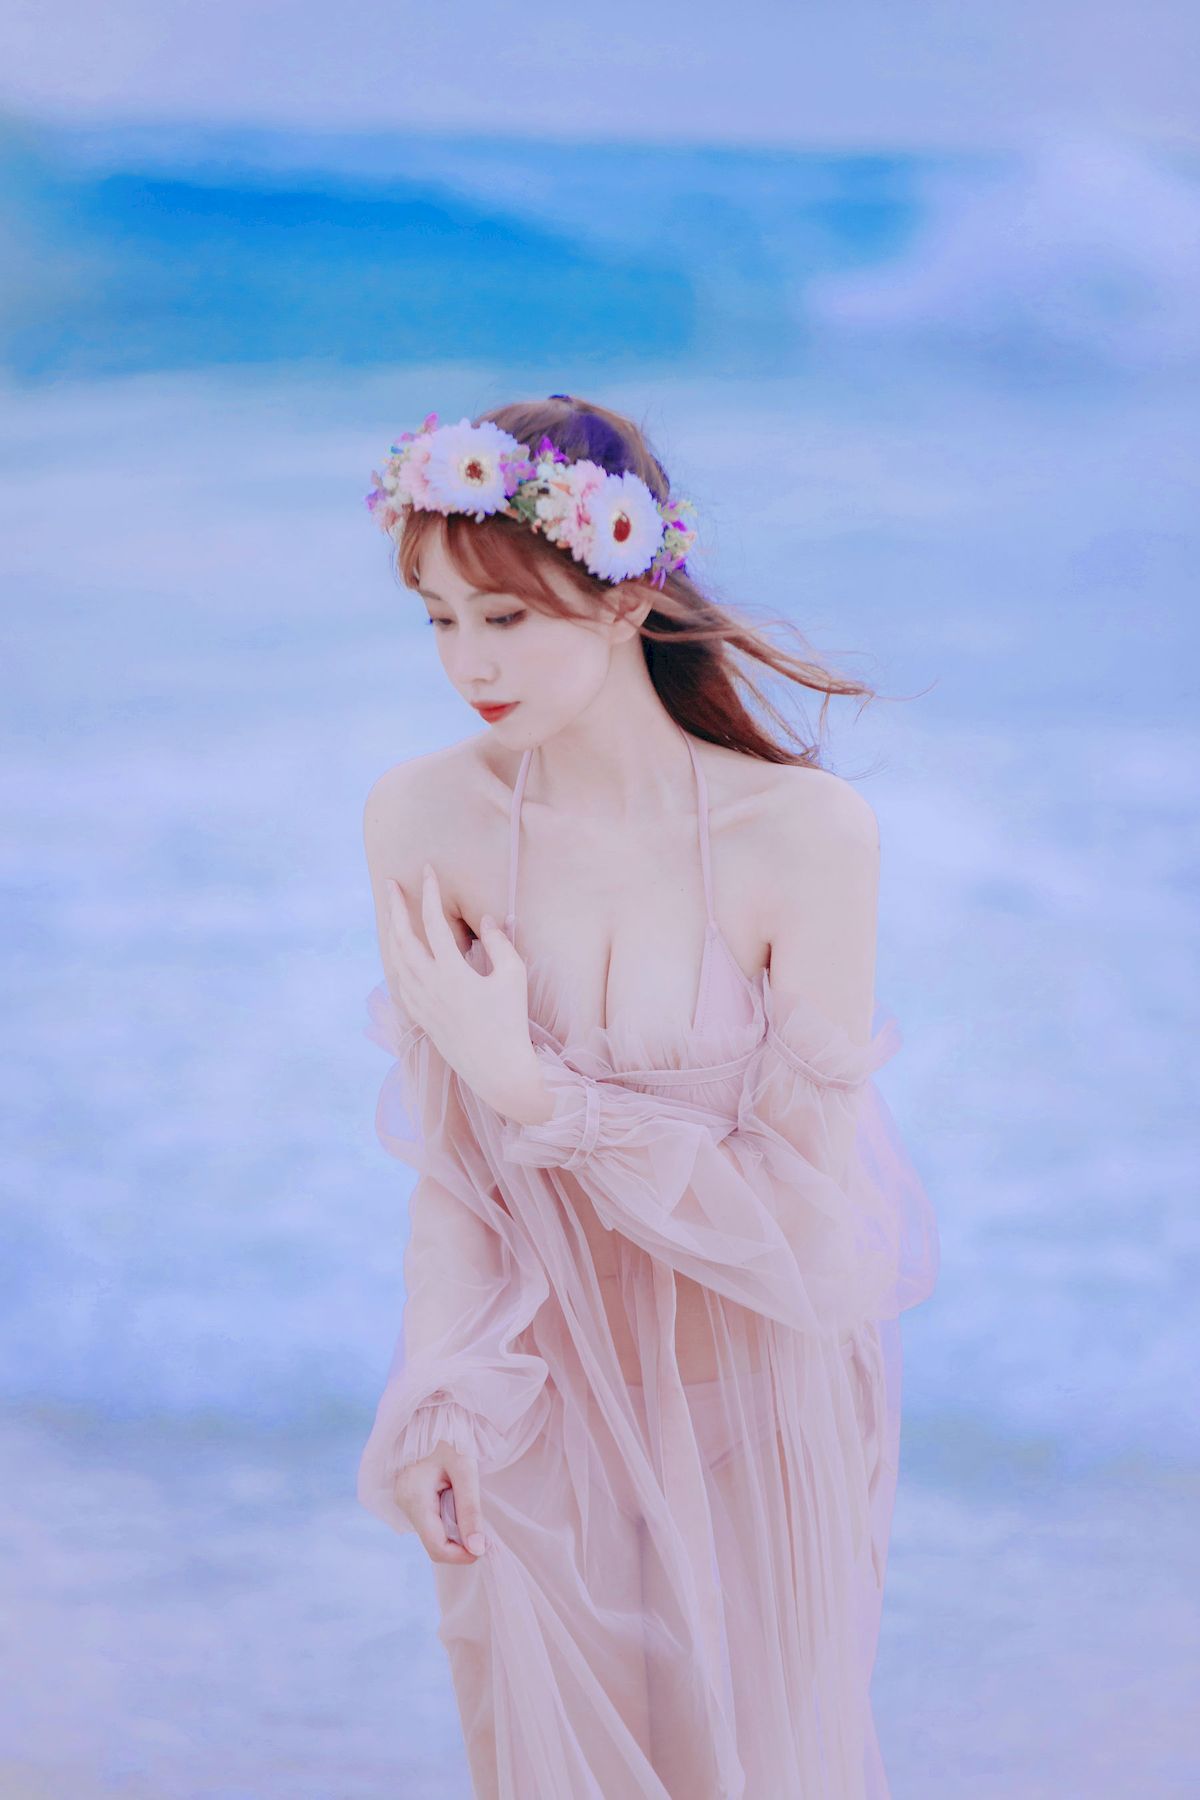 念雪ww - 海边沙滩轻透服饰花仙子主题写真